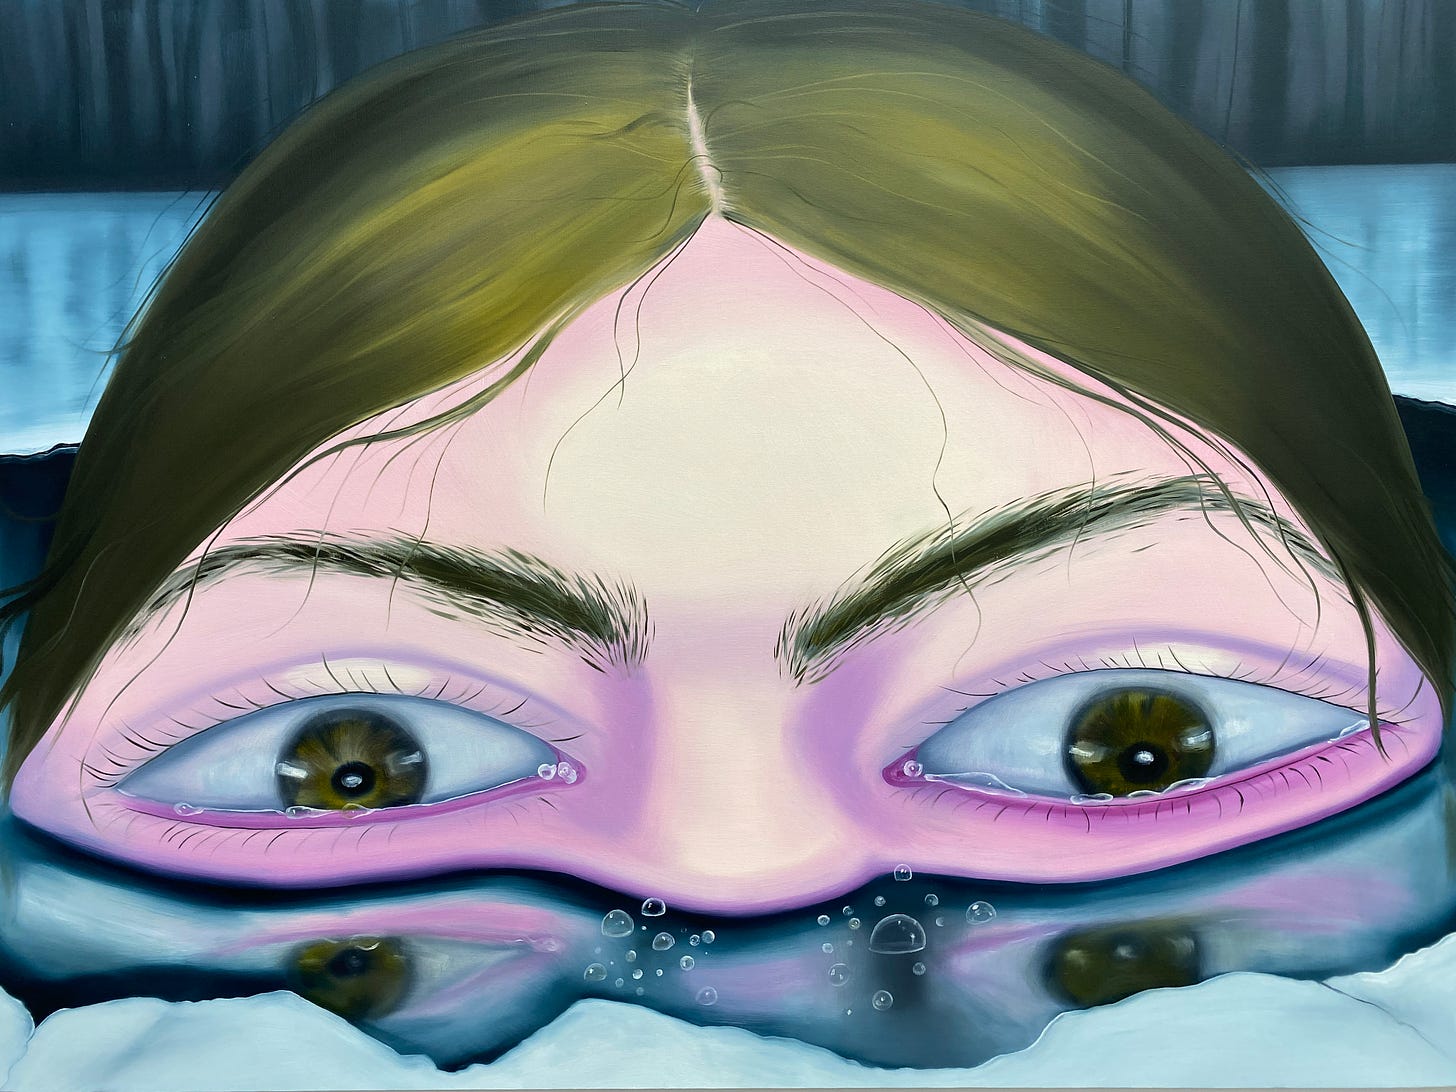 Imagem: Pintura em tamanho exagerado da metade do rosto de uma menina mostrando olhos bem abertos, cabelos esverdeados divididos no meio e água abaixo do nariz